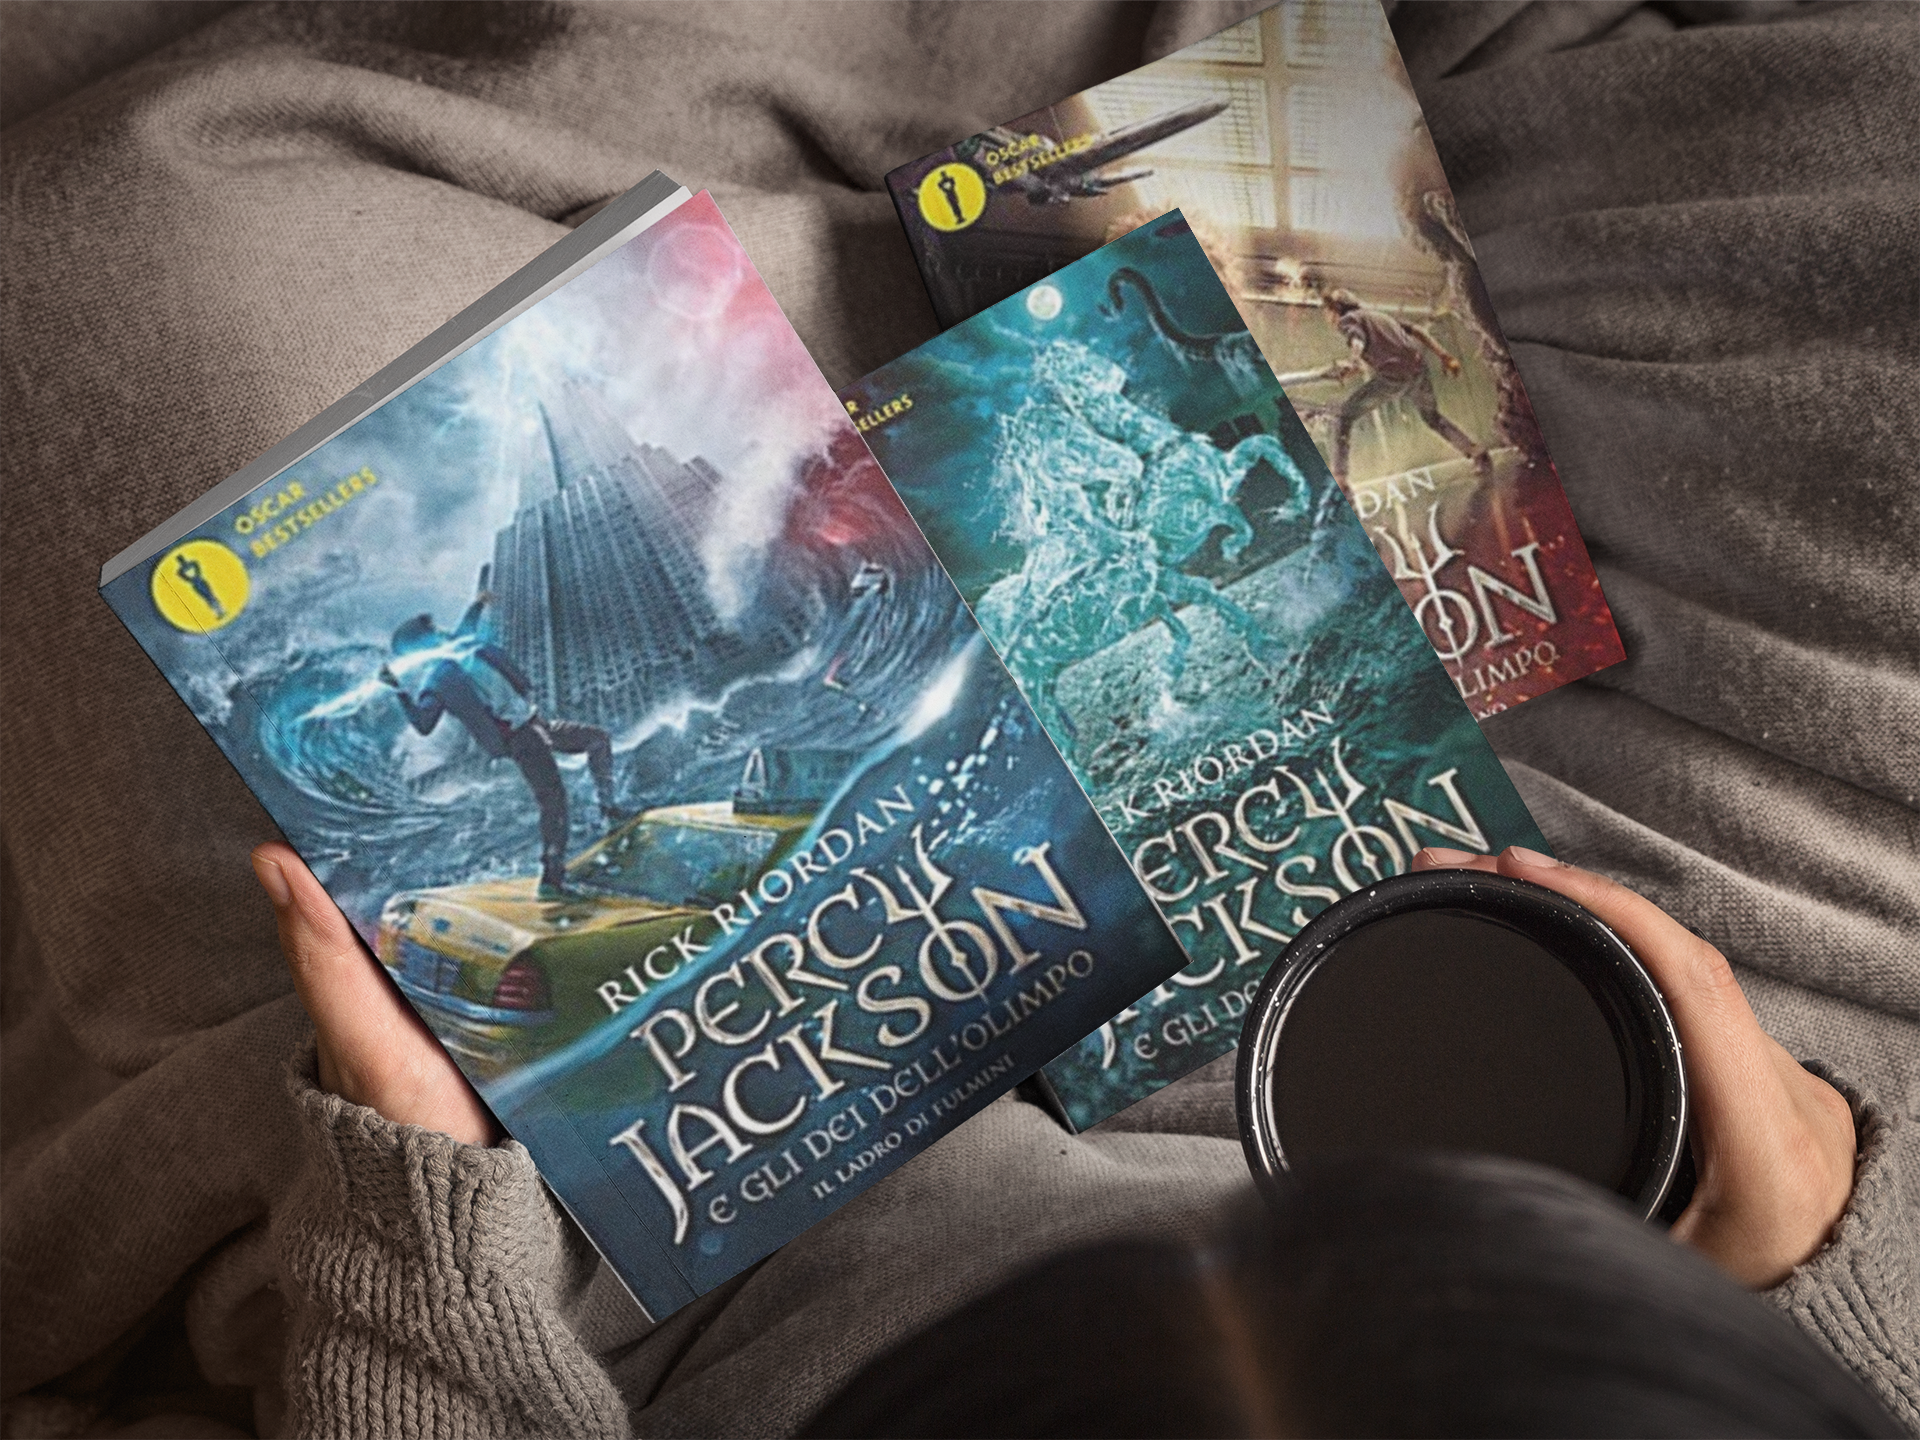 Percy Jackson: tutti i libri della saga (no spoiler)